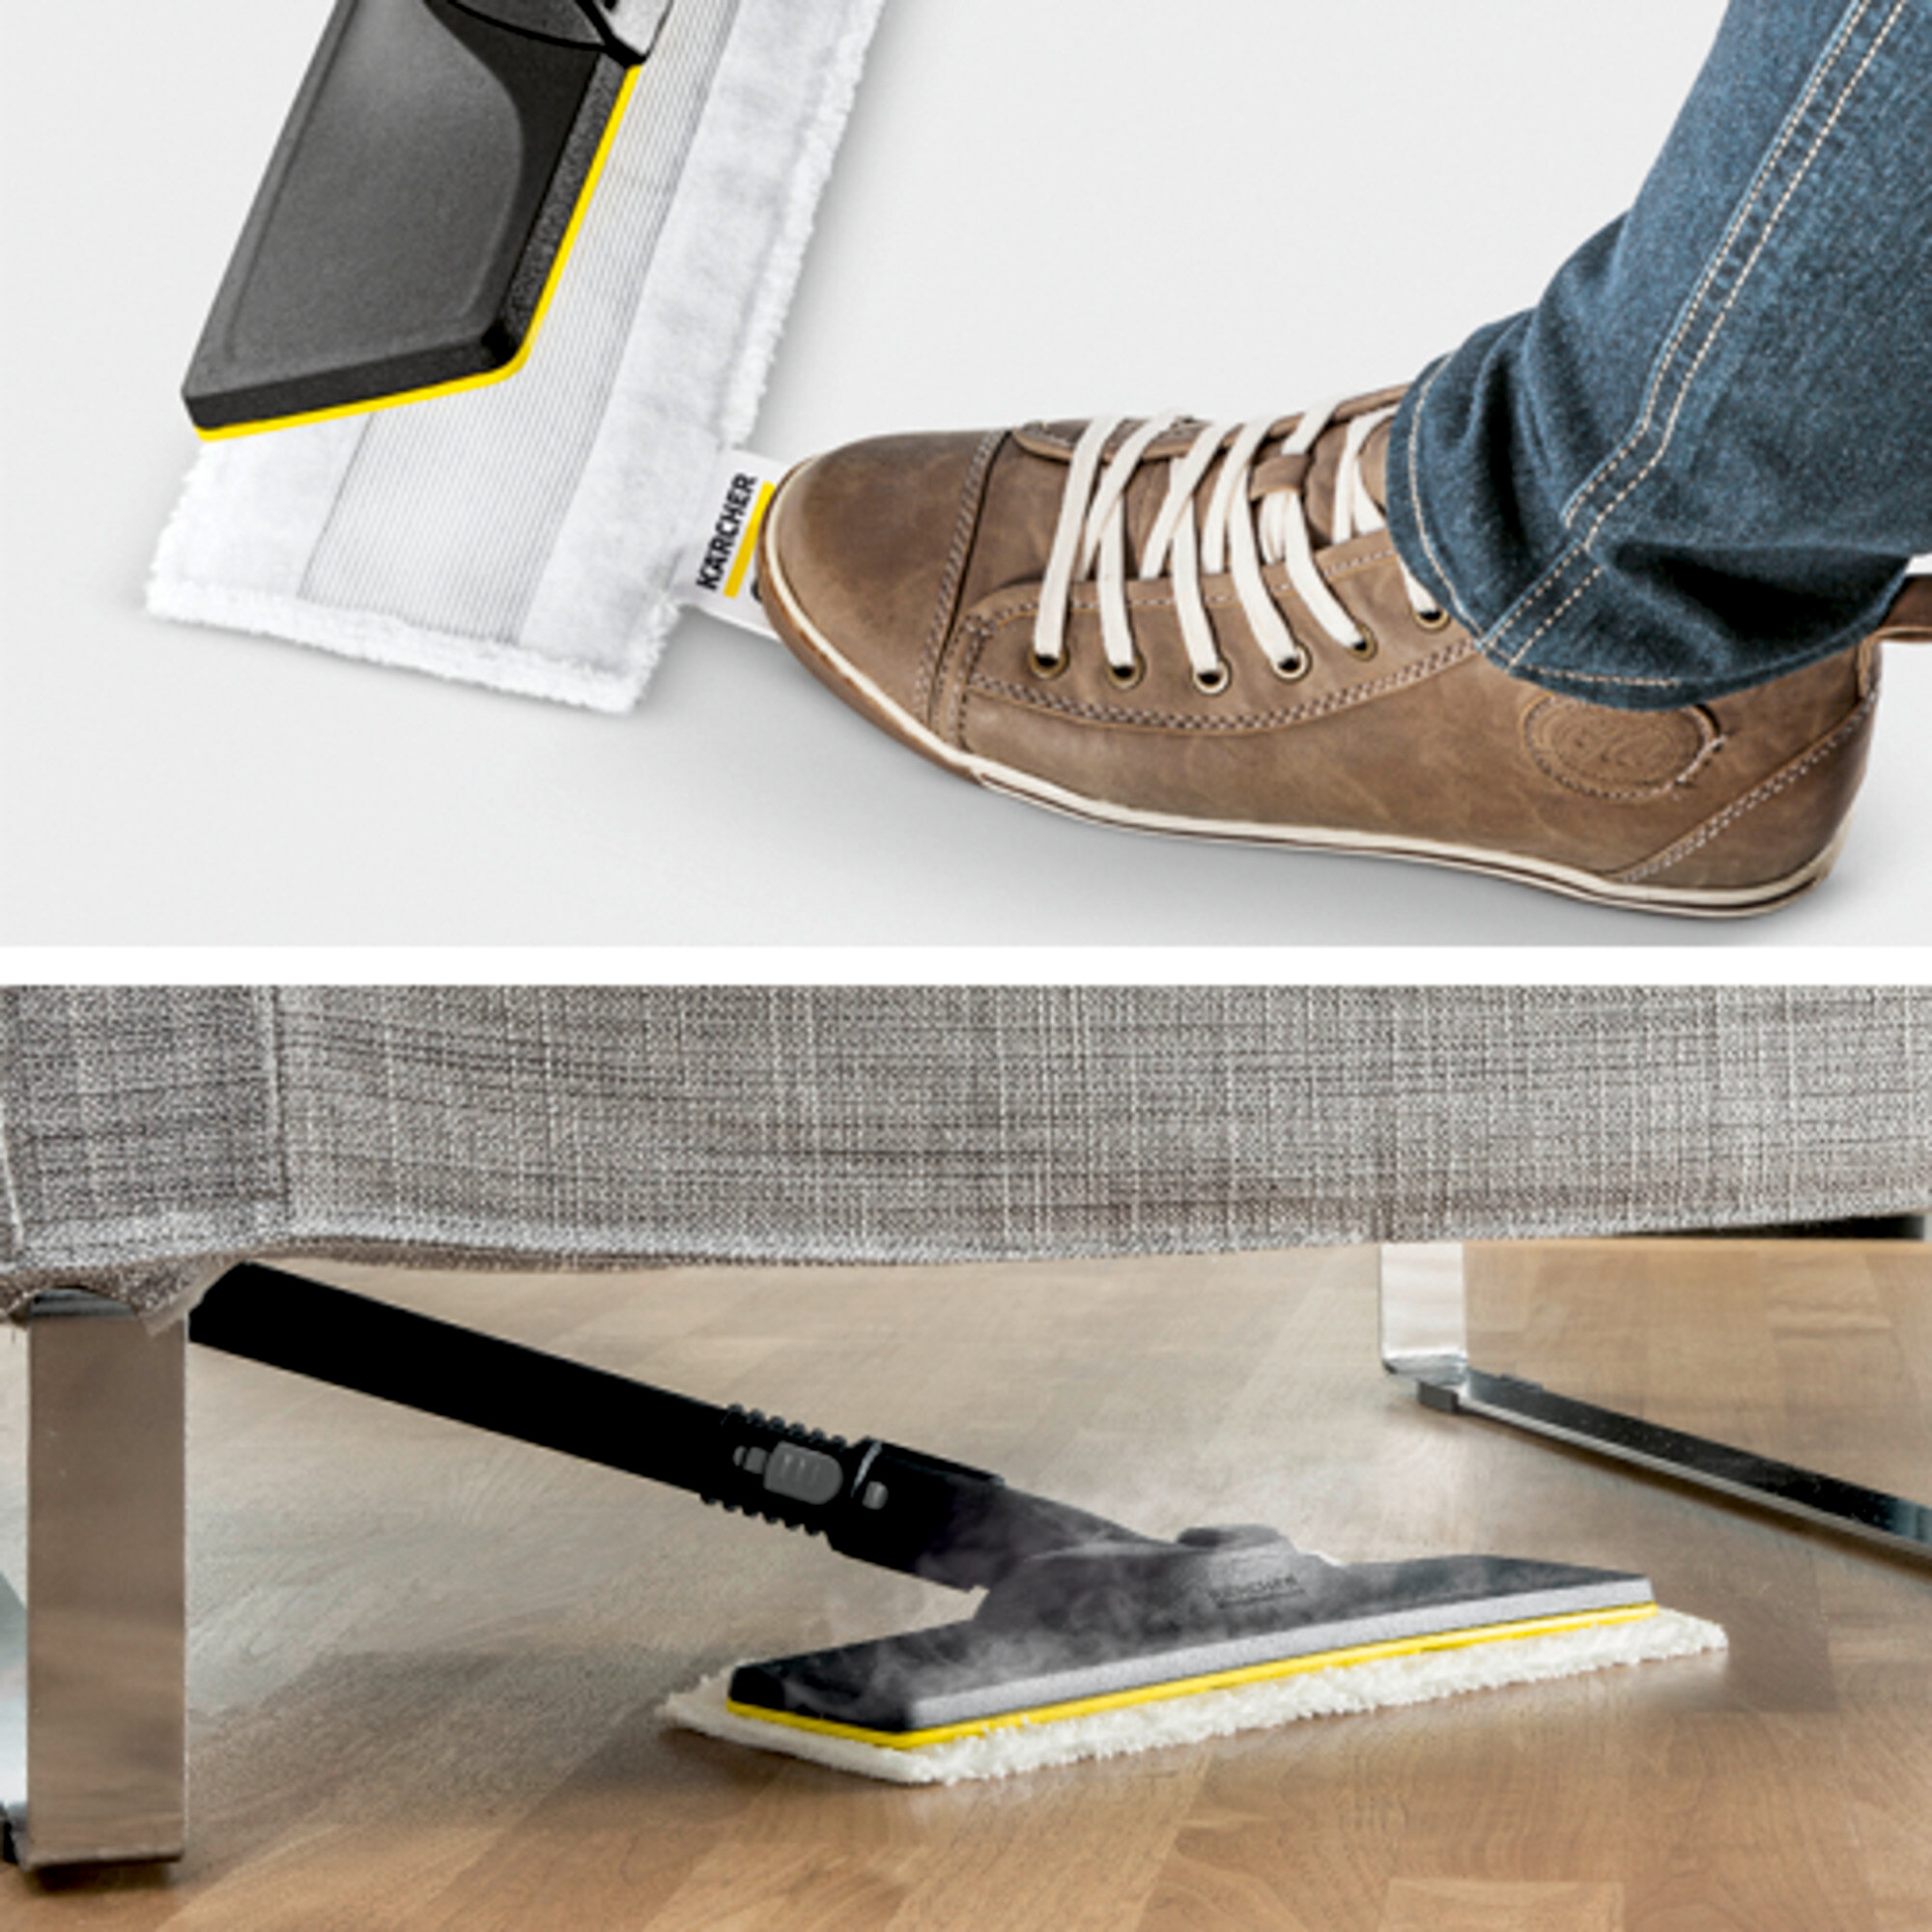  SC 4 EasyFix Premium Iron: Põrandapuhastuskomplekt EasyFix, kuhu kuuluvad painduva ühendusega põrandaotsak ning mugav takjapaelkinnitus põrandalapi jaoks.